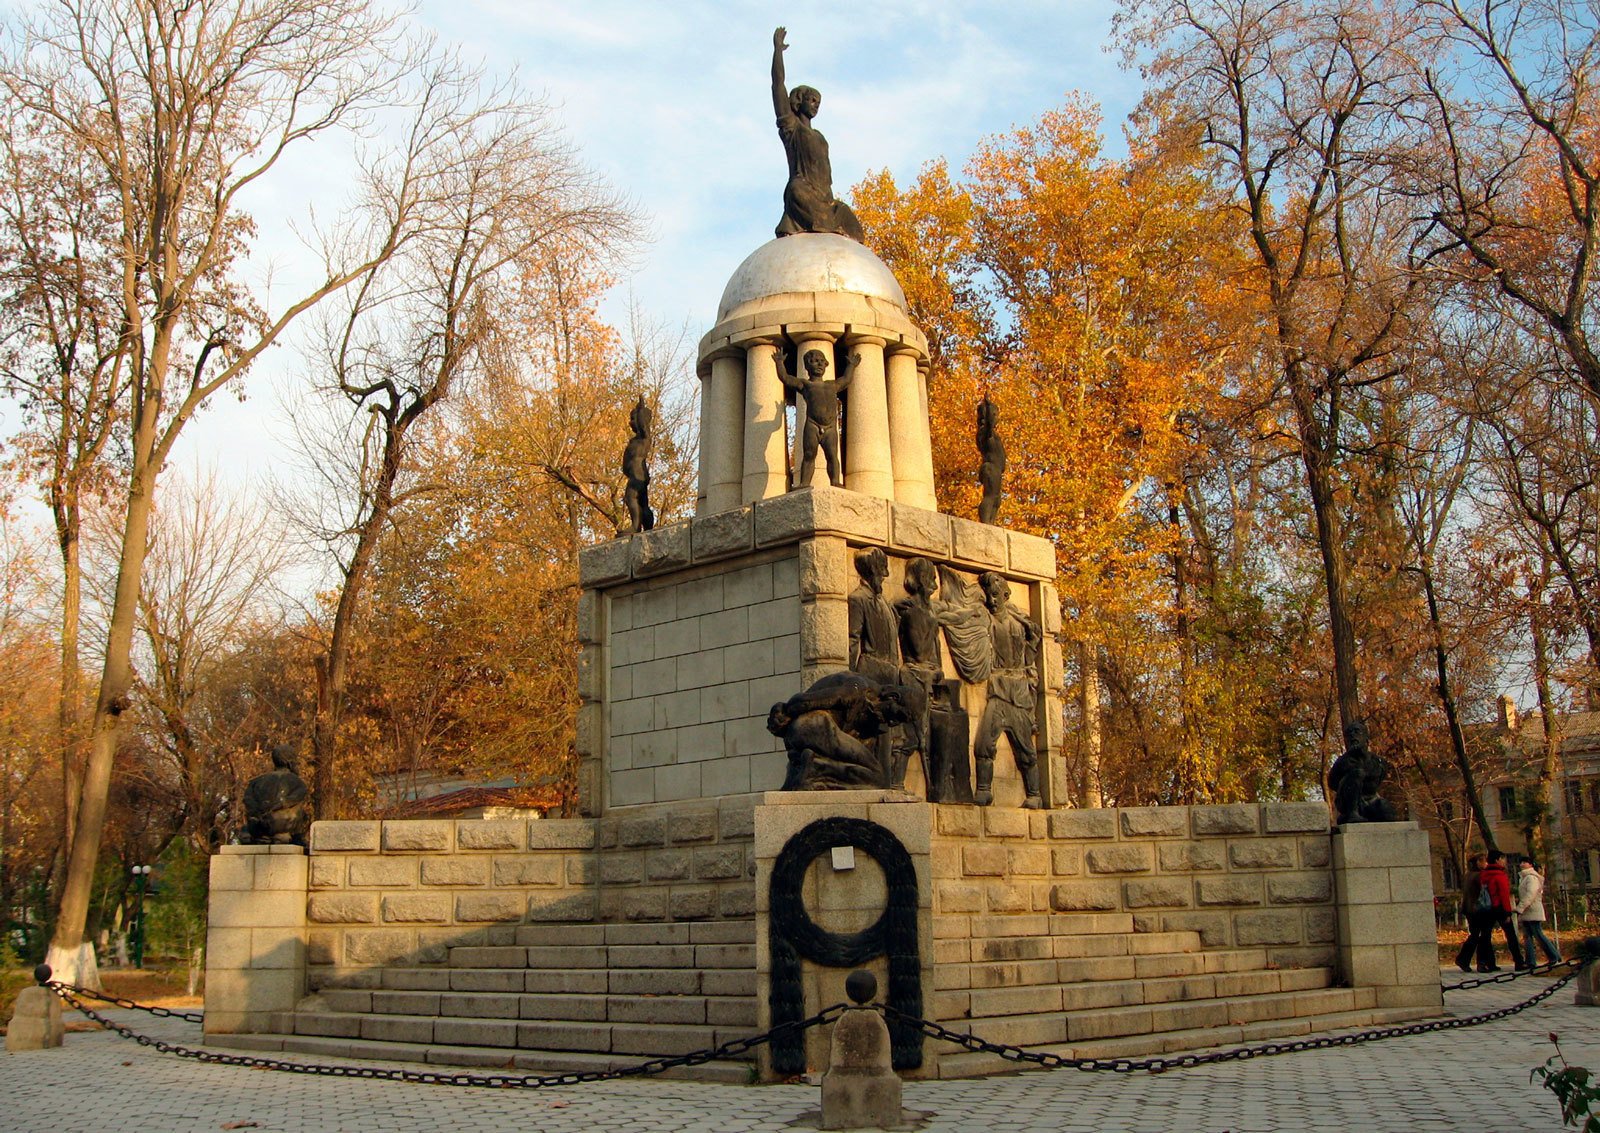 Памятник Свободы (1919) в Самарканде, созданный по проекту архитектора Эдварда Руша. Демонтирован в 2009